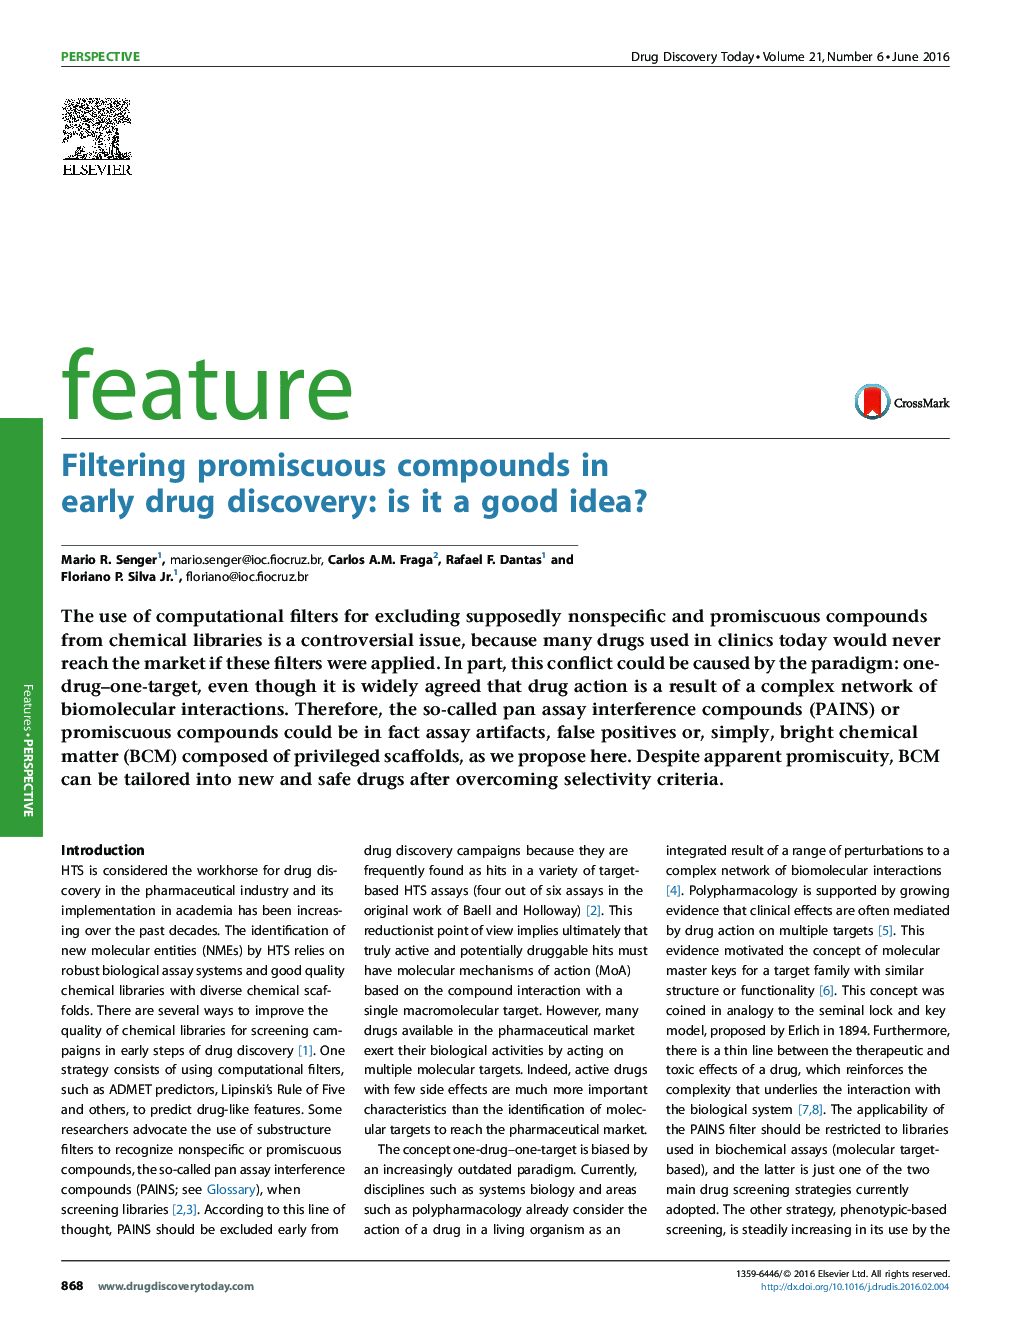 فیلتر کردن ترکیبات پر محرک در کشف داروهای اولیه: آیا ایده خوبی است؟ 